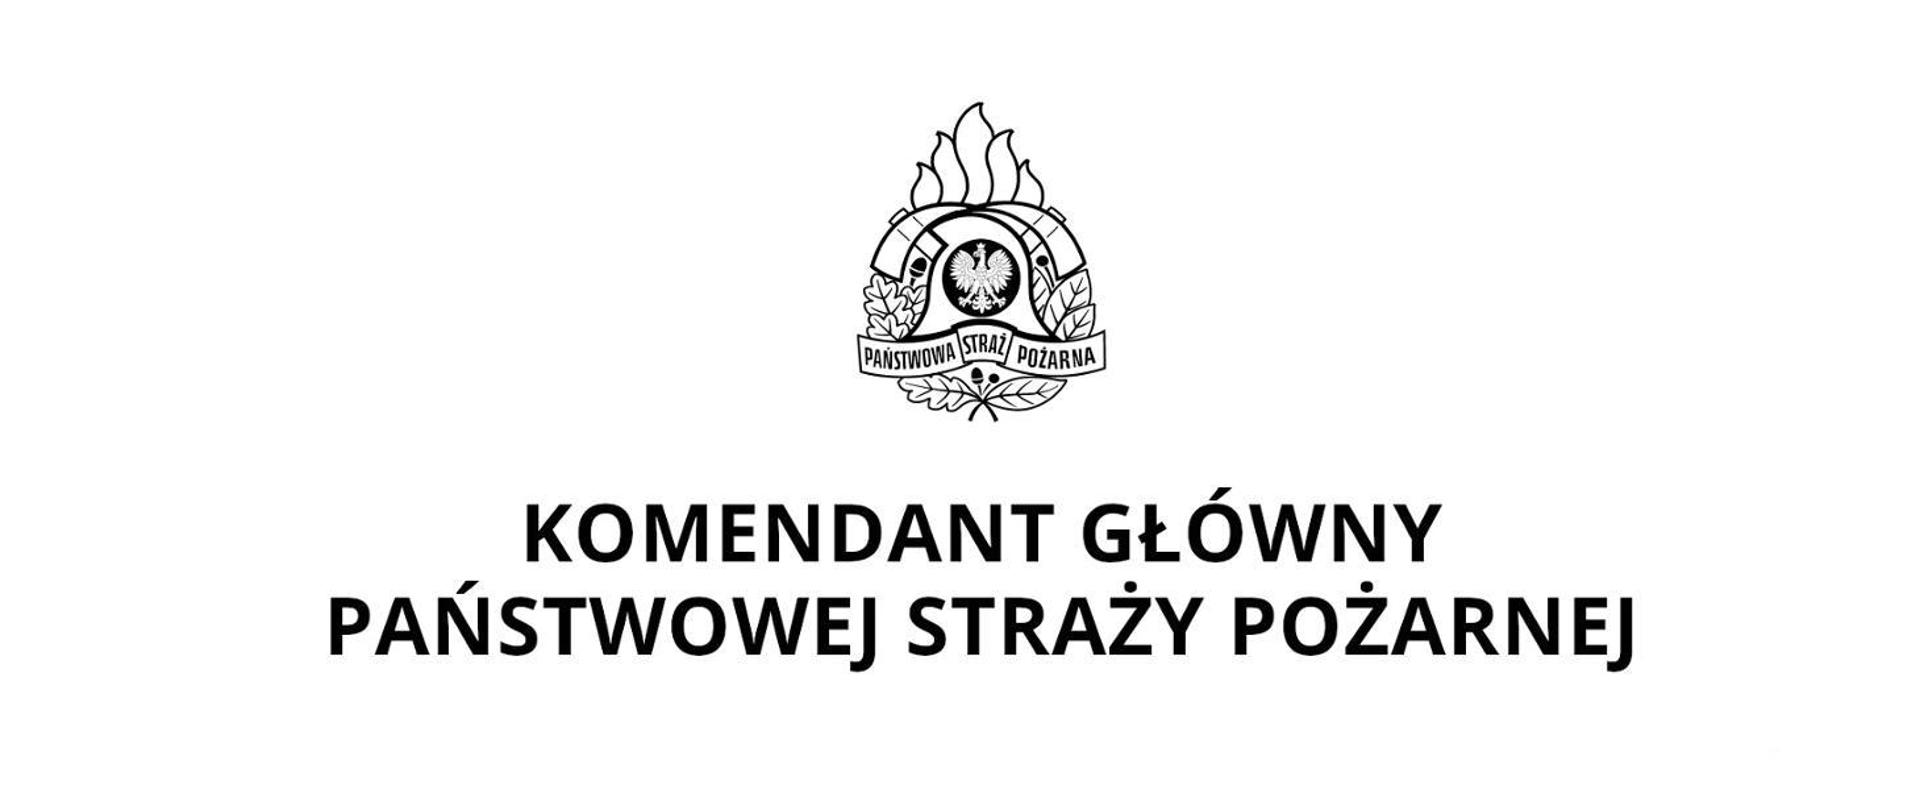 Ilustracja przestawia na białym tle centralnie umieszczone logo państwowej straży pożarnej oraz napis umieszczony poniżej o treści Komendant Główny Państwowej Straży Pożarnej 